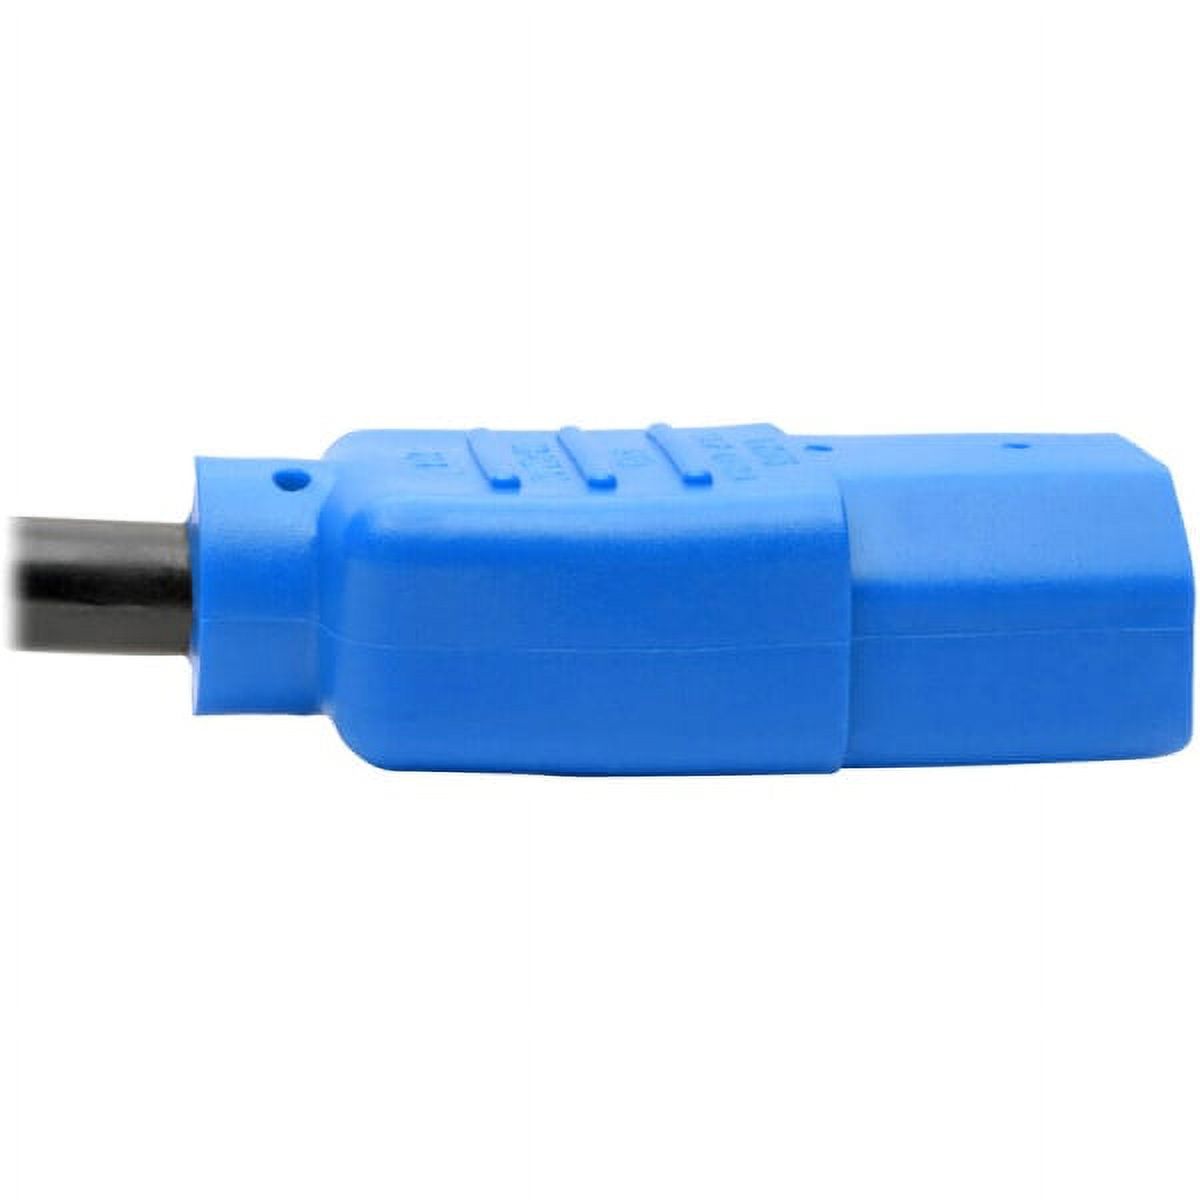 Tripp Lite P006-004-BL 18 AWG NEMA 5-15P to IEC-320-C13 Power Cord, Blue, 4' - image 4 of 4